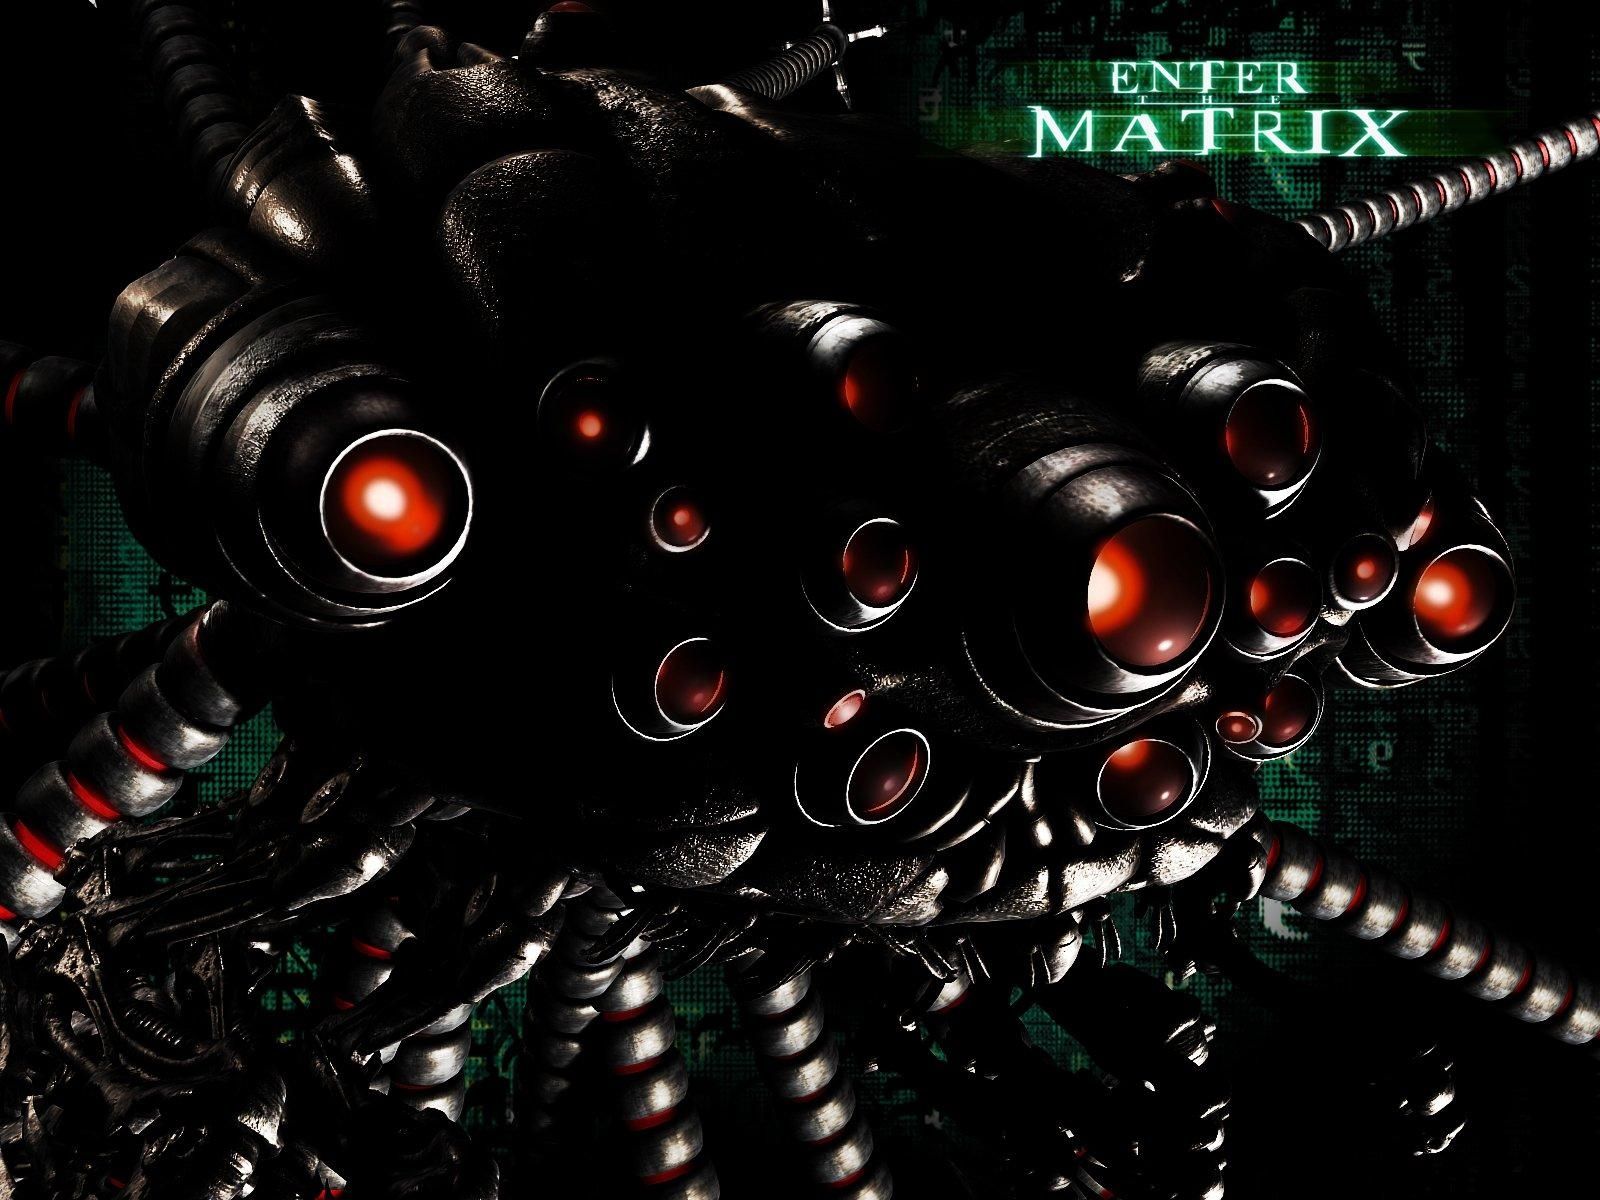 Fond d'écran gratuit de Enter The Matrix numéro 43895